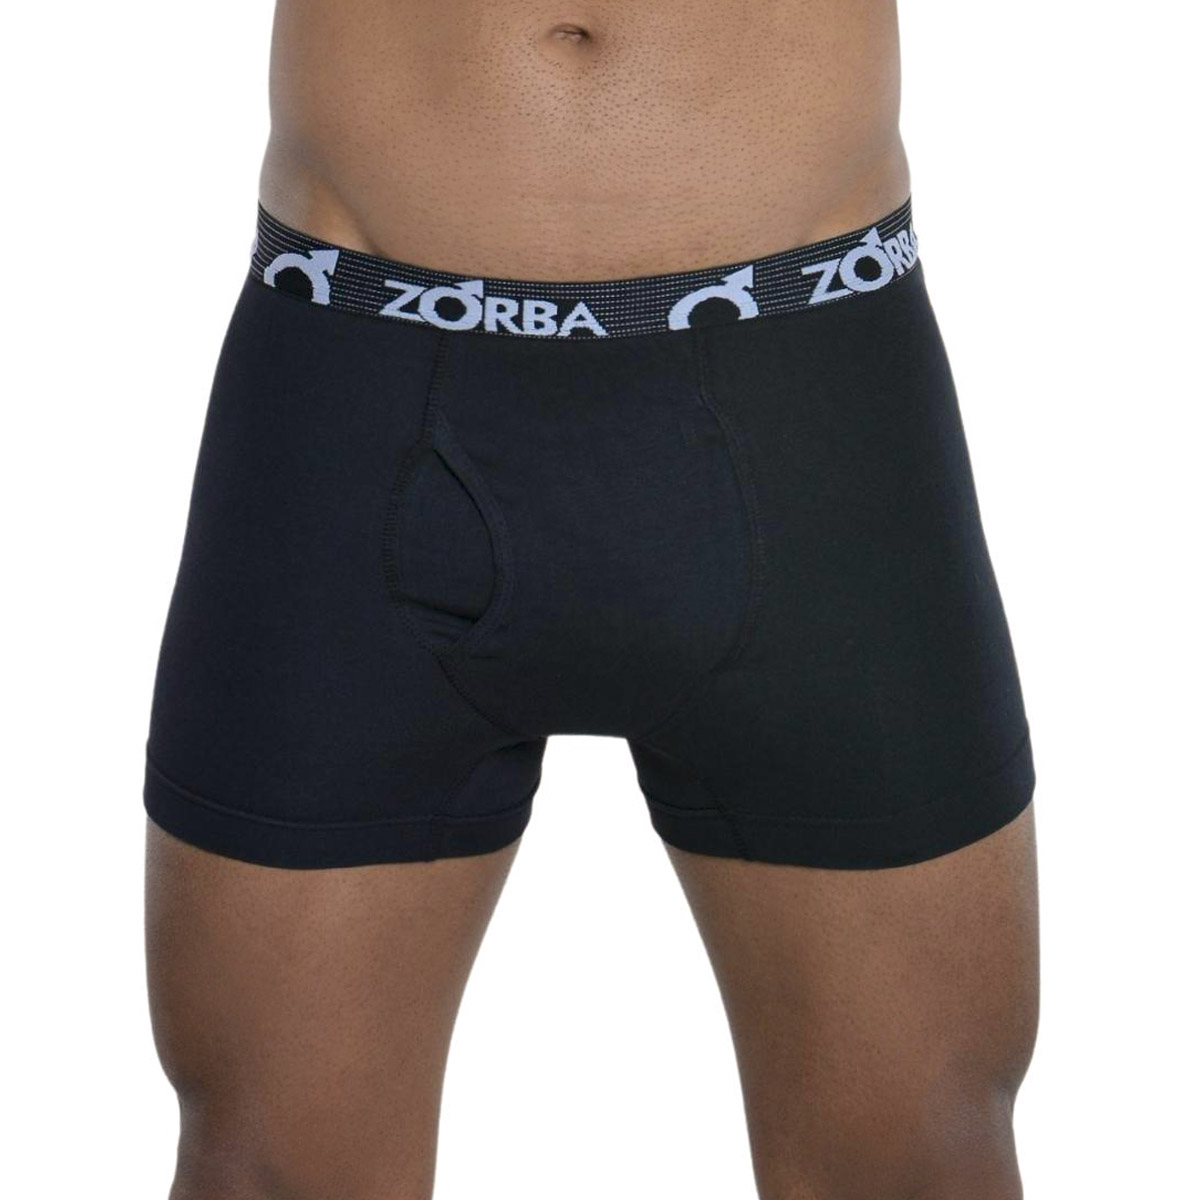 Cueca masculina em algodão modelo boxer com abertura Zorba